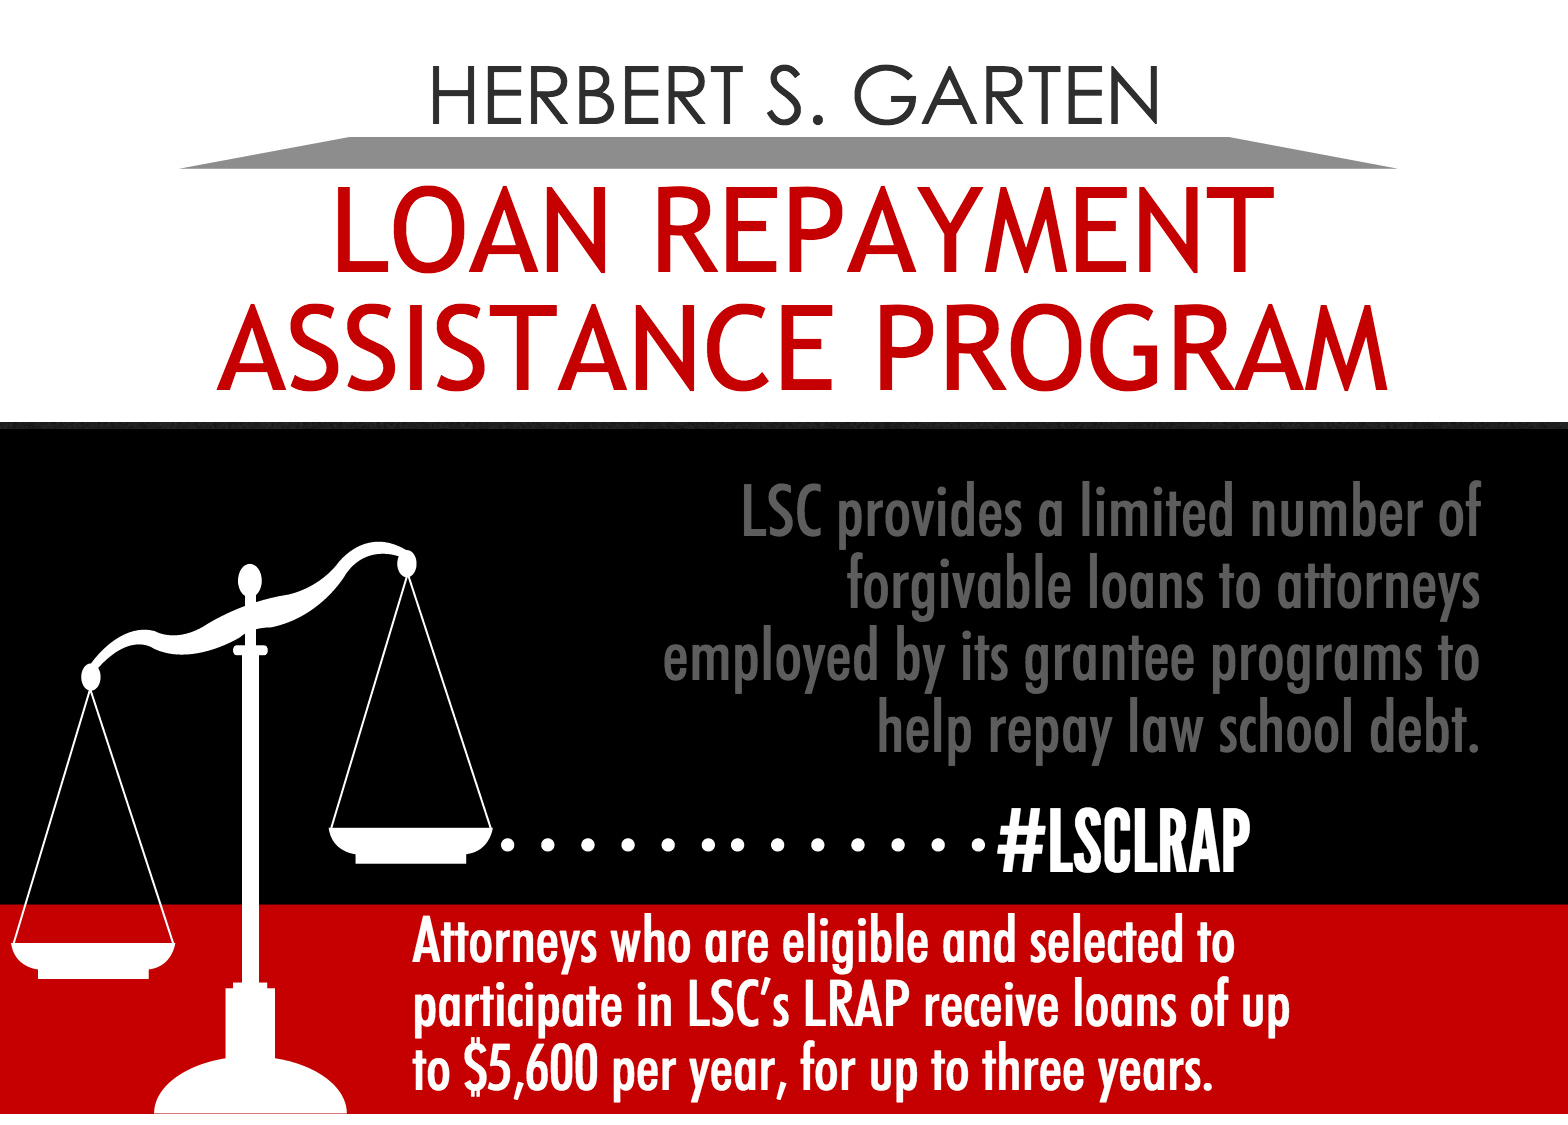 Herbert S. Garten Loan Repayment Assistance Program graphic